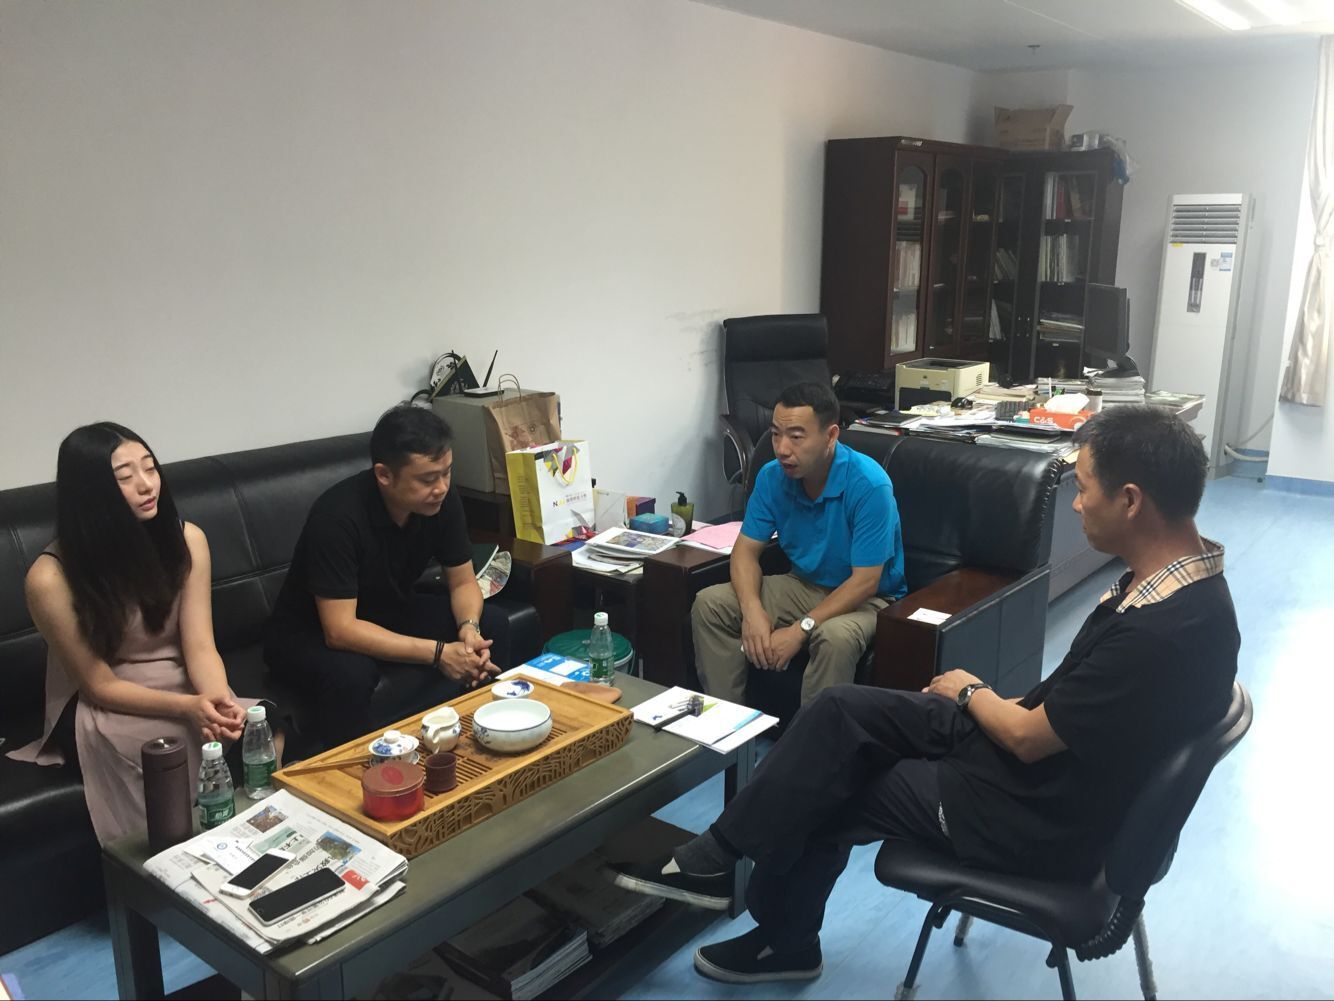 珠海森坦企业孵化管理有限公司副总裁李泽昊到访我校